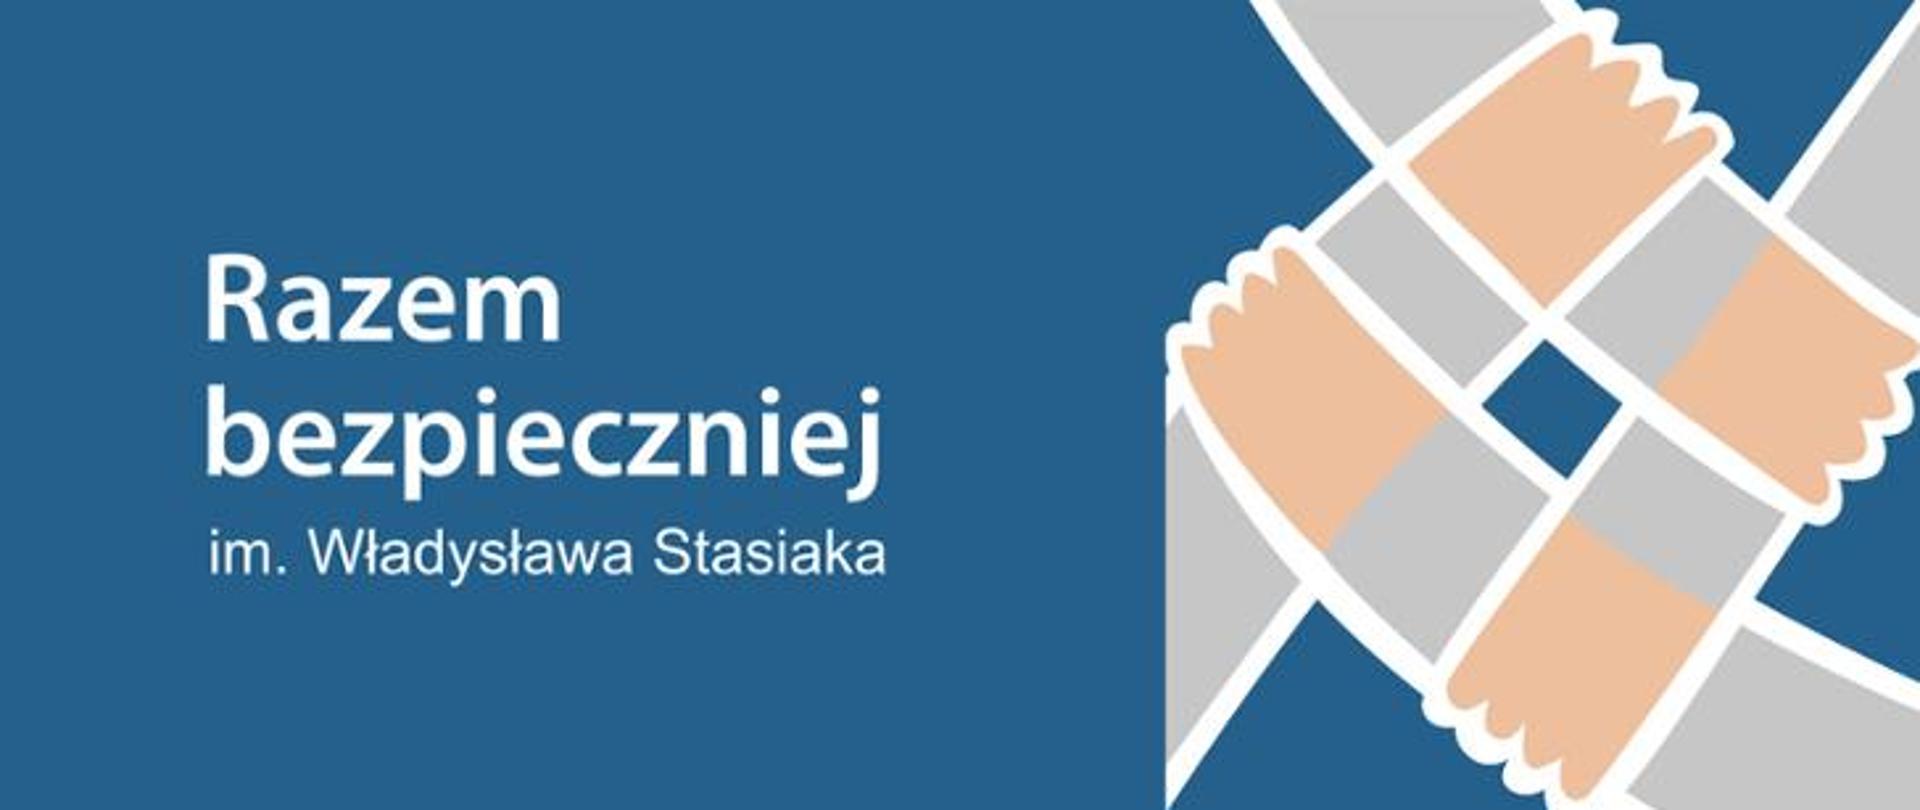 Niebieska grafika z białym napisem "Razem bezpieczniej im. Władysława Stasiaka"
